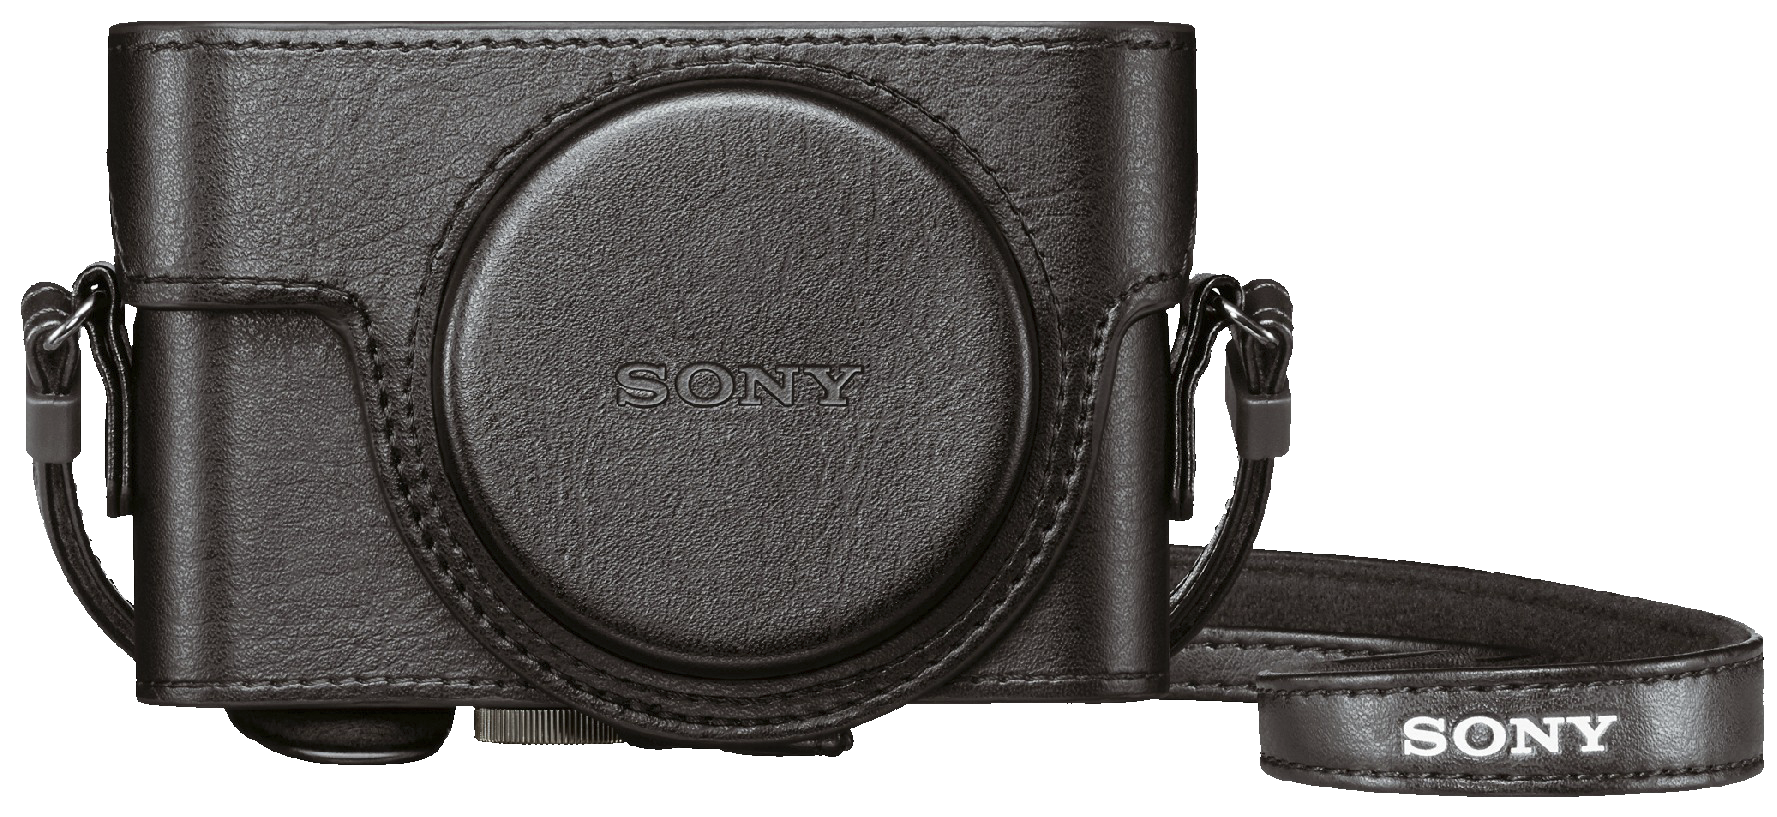 Originalt etui til Sony RX100 kameraer - Kameratasker & etuier - Elgiganten